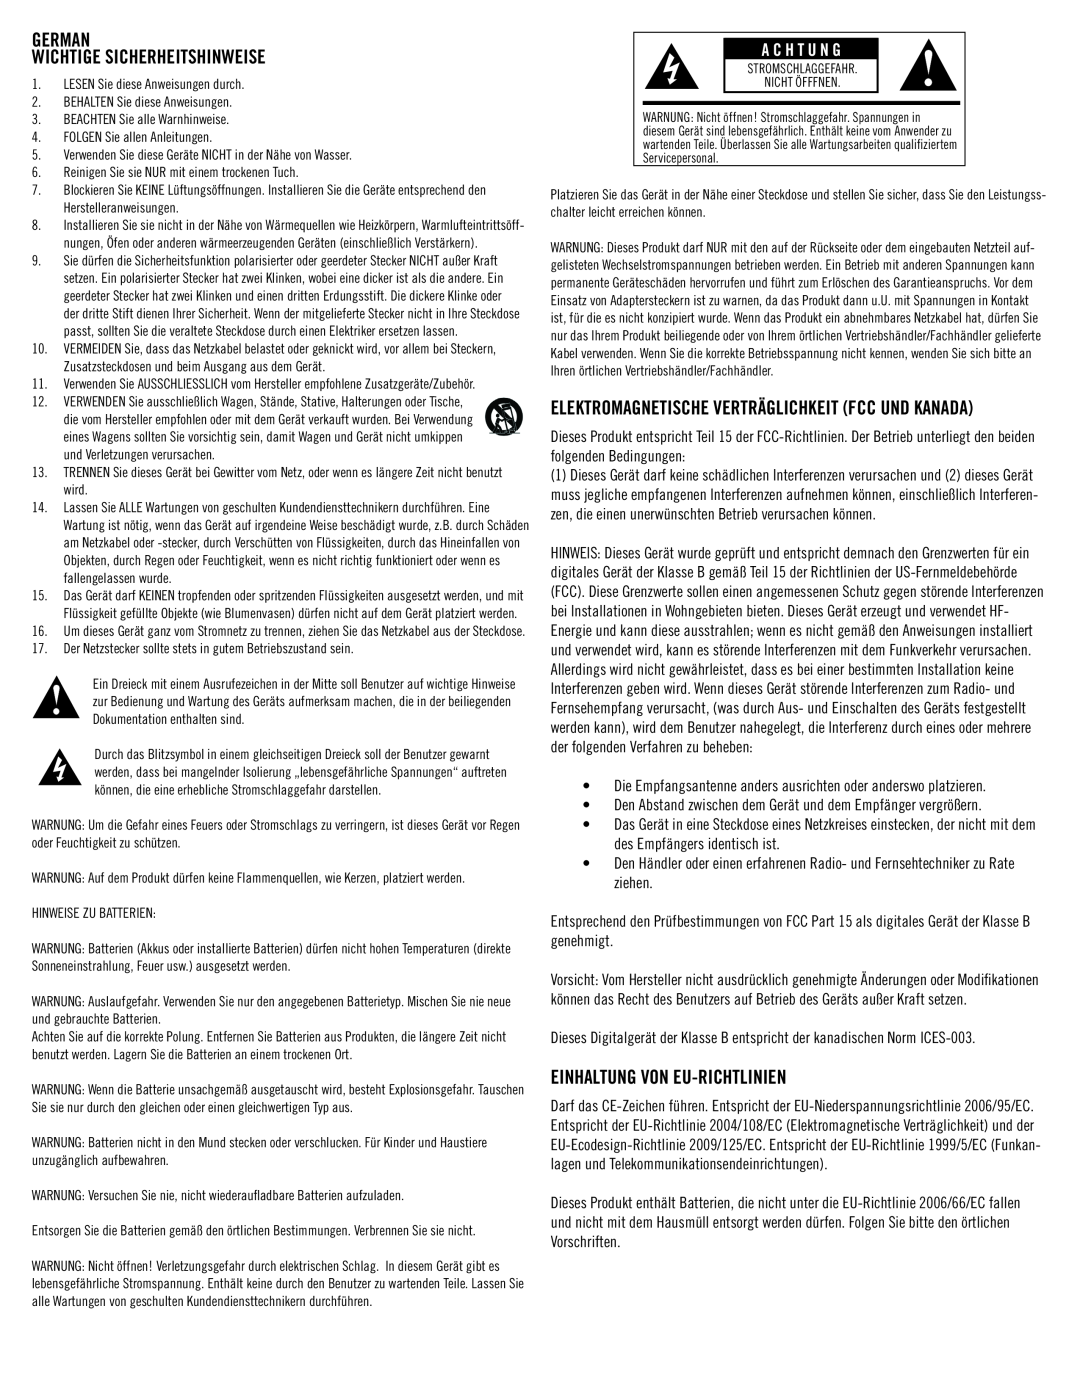 Klipsch SB 1 owner manual German Wichtige Sicherheitshinweise, Einhaltung Von Eu-Richtlinien, A C H T U N G 